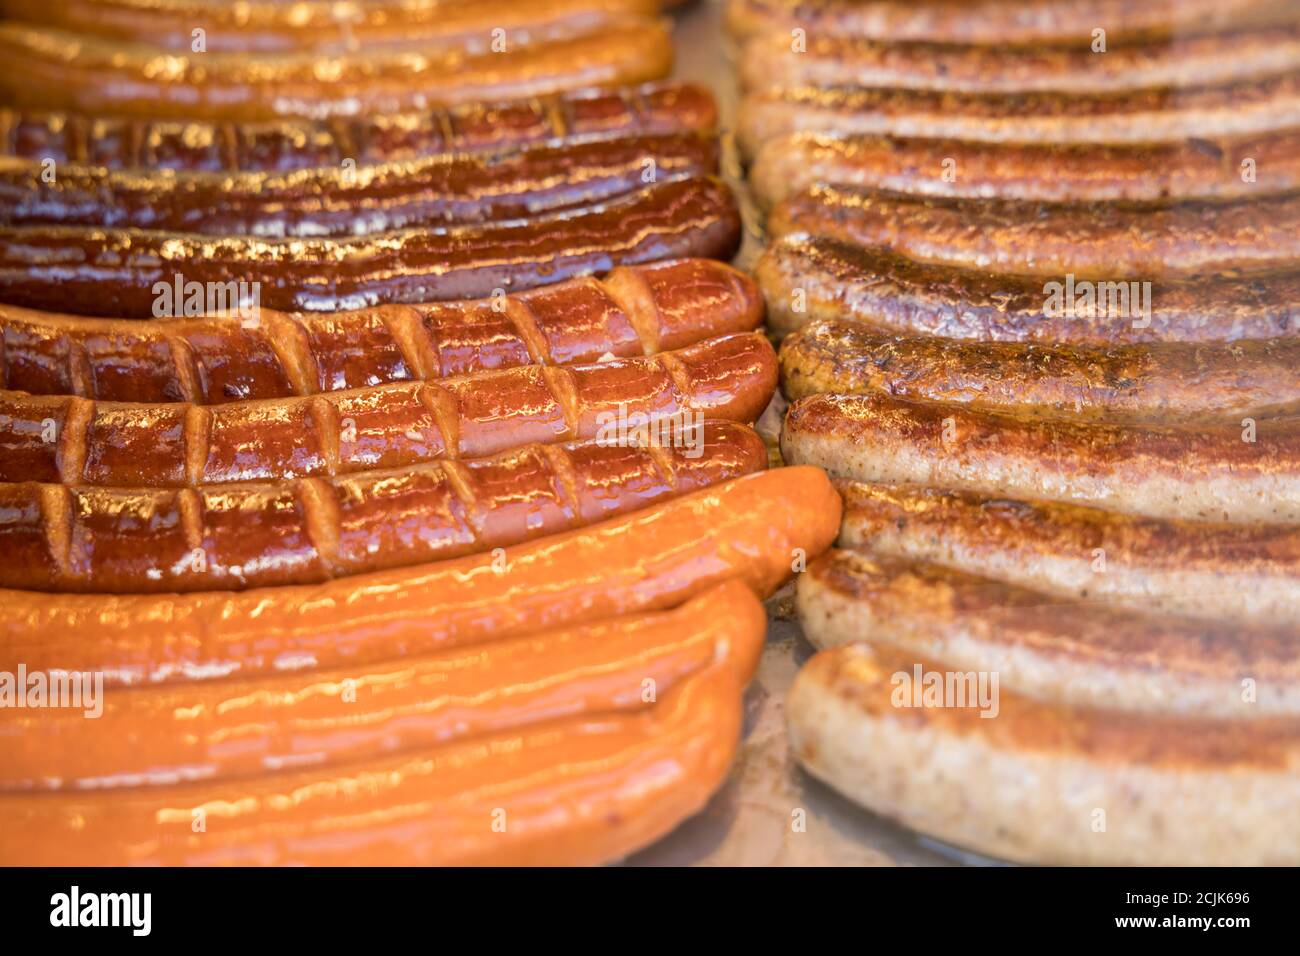 Wurst (sausages) for sale in Stephansplatz, Vienna, Austria Stock Photo